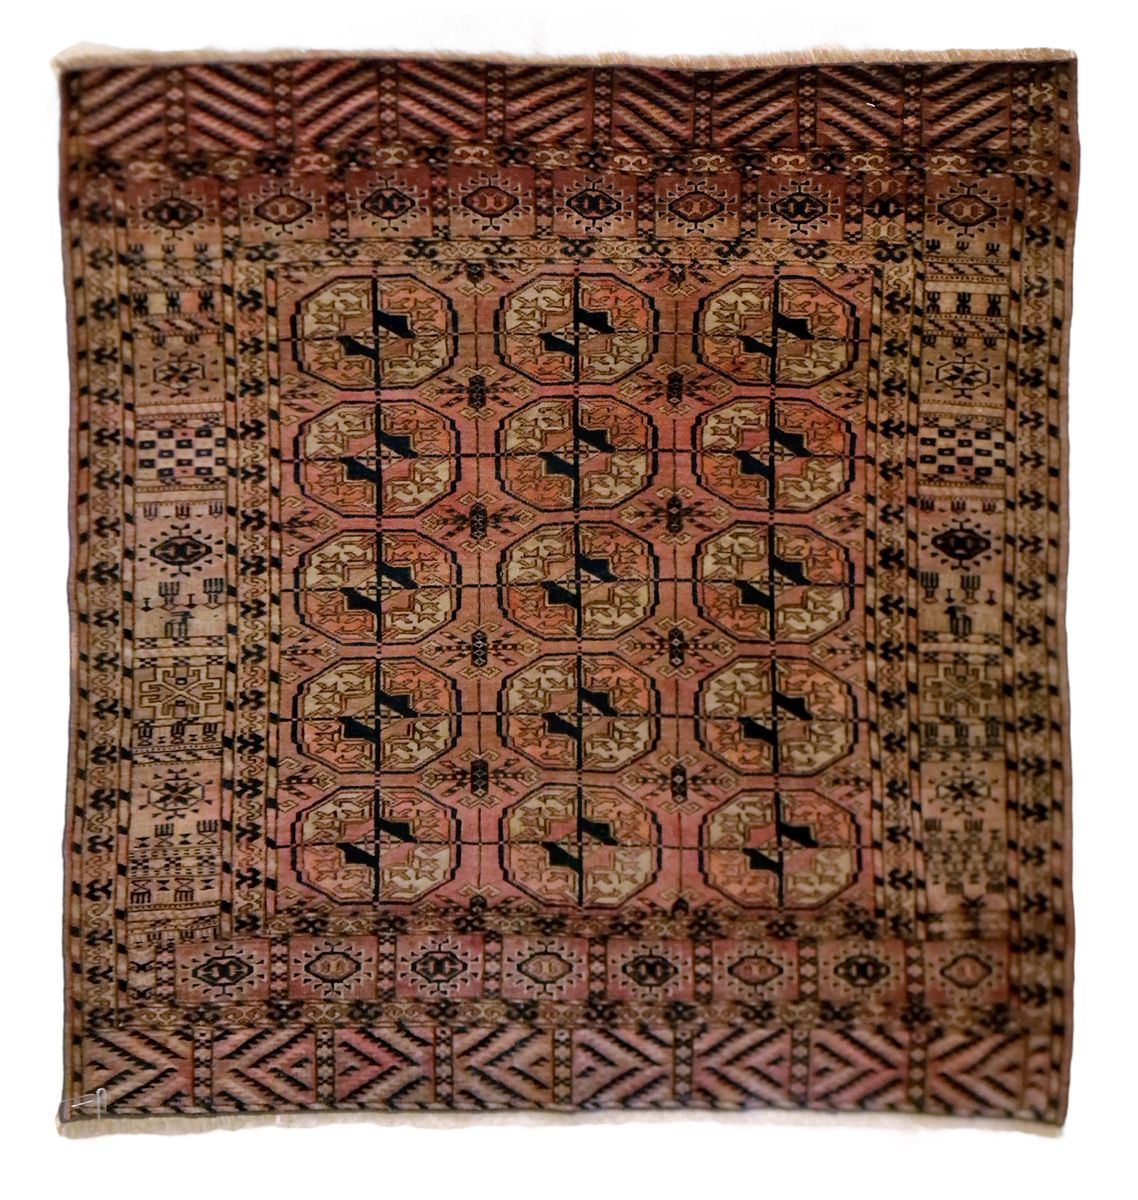 TAPIS YAMUT-BOUKHARA 几何装饰，状况良好。
尺寸：100 x 115厘米

A.Yamut Bukhara地毯，状况良好。